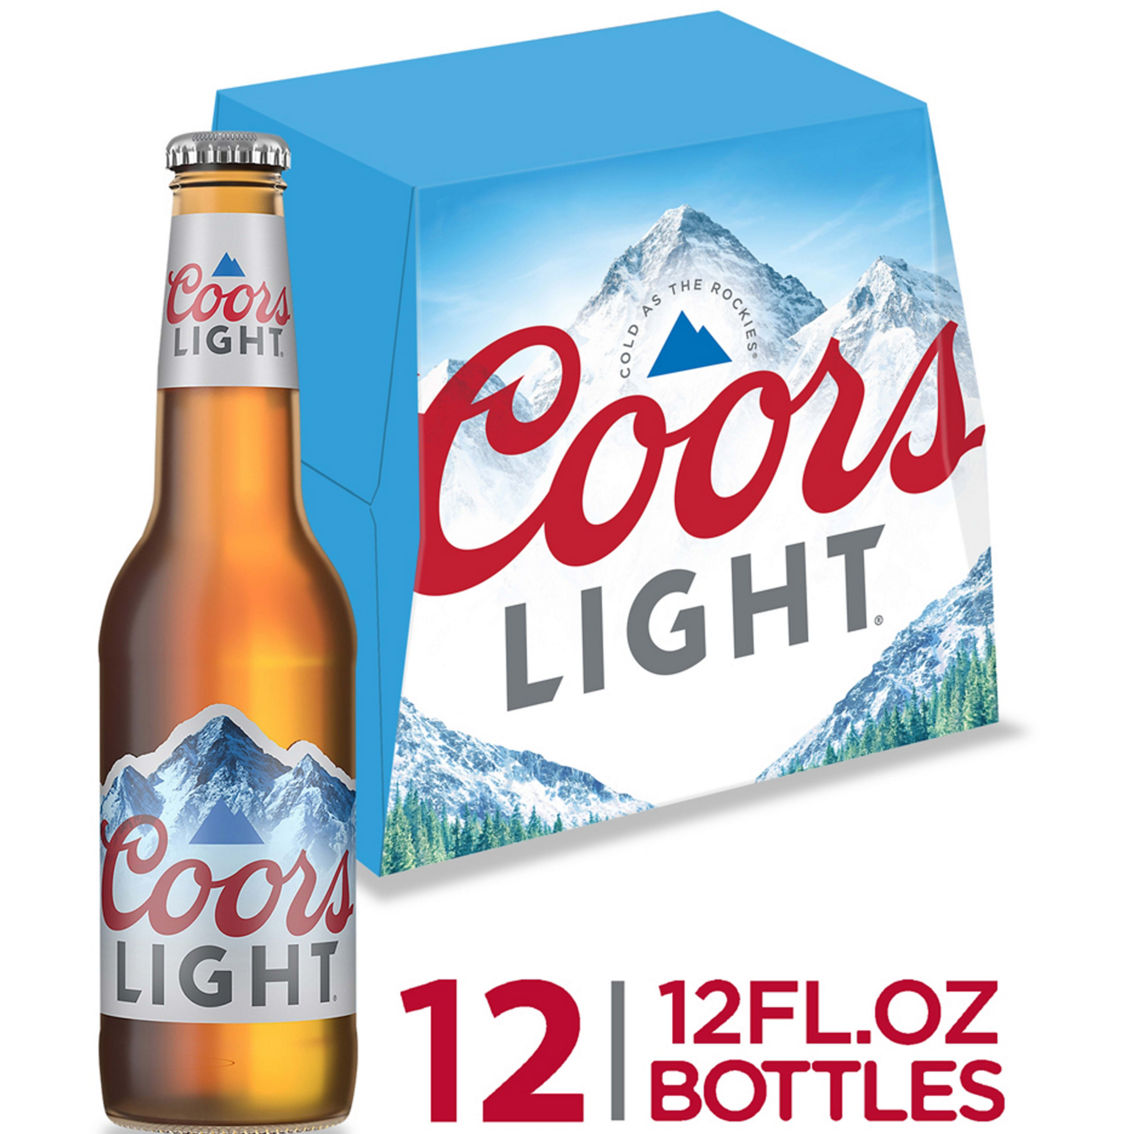 Coors Light 12 oz. Bottle 12 pk. - Image 2 of 2